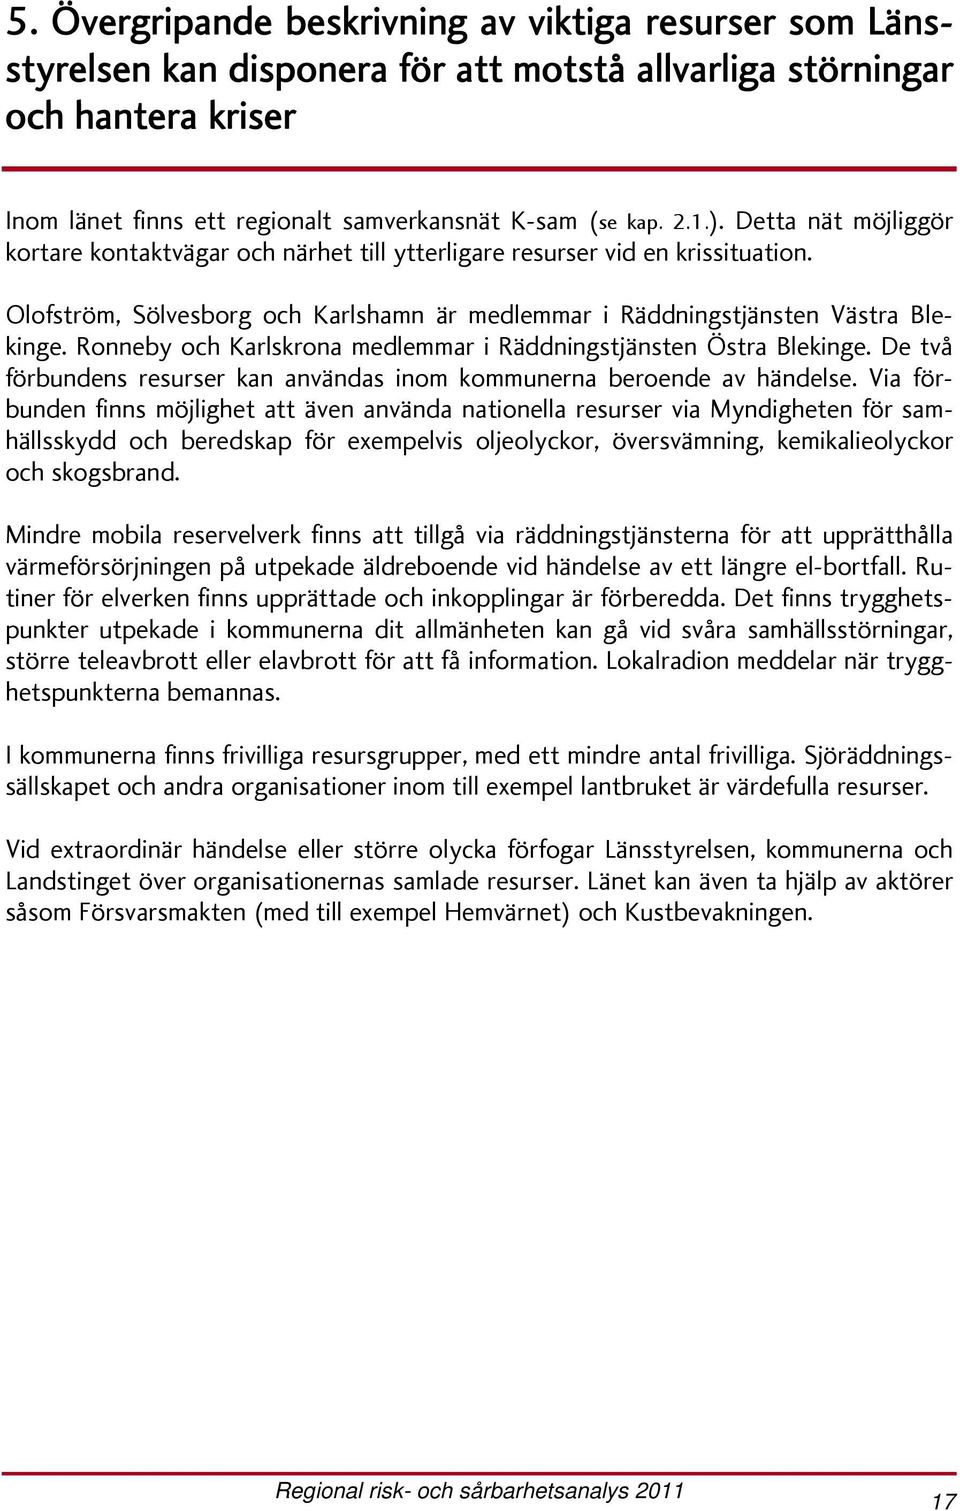 Ronneby och Karlskrona medlemmar i Räddningstjänsten Östra Blekinge. De två förbundens resurser kan användas inom kommunerna beroende av händelse.